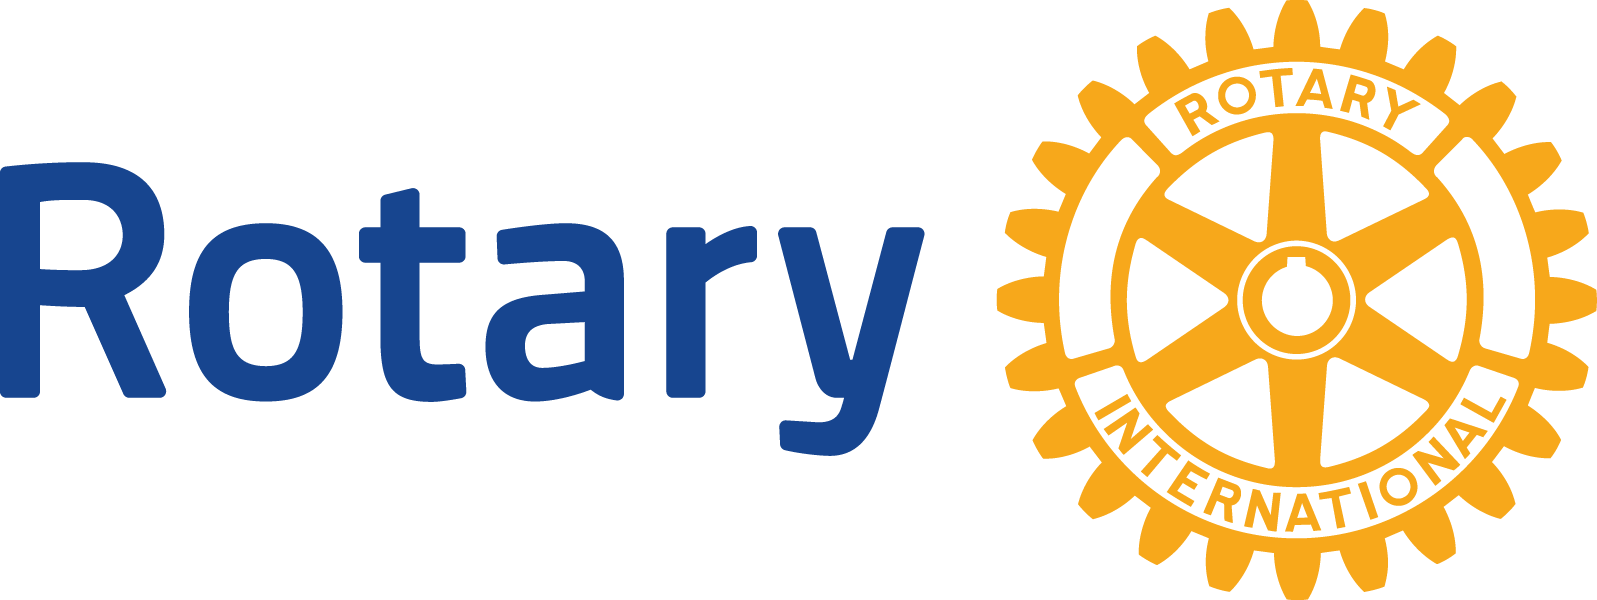 Rotary web logo